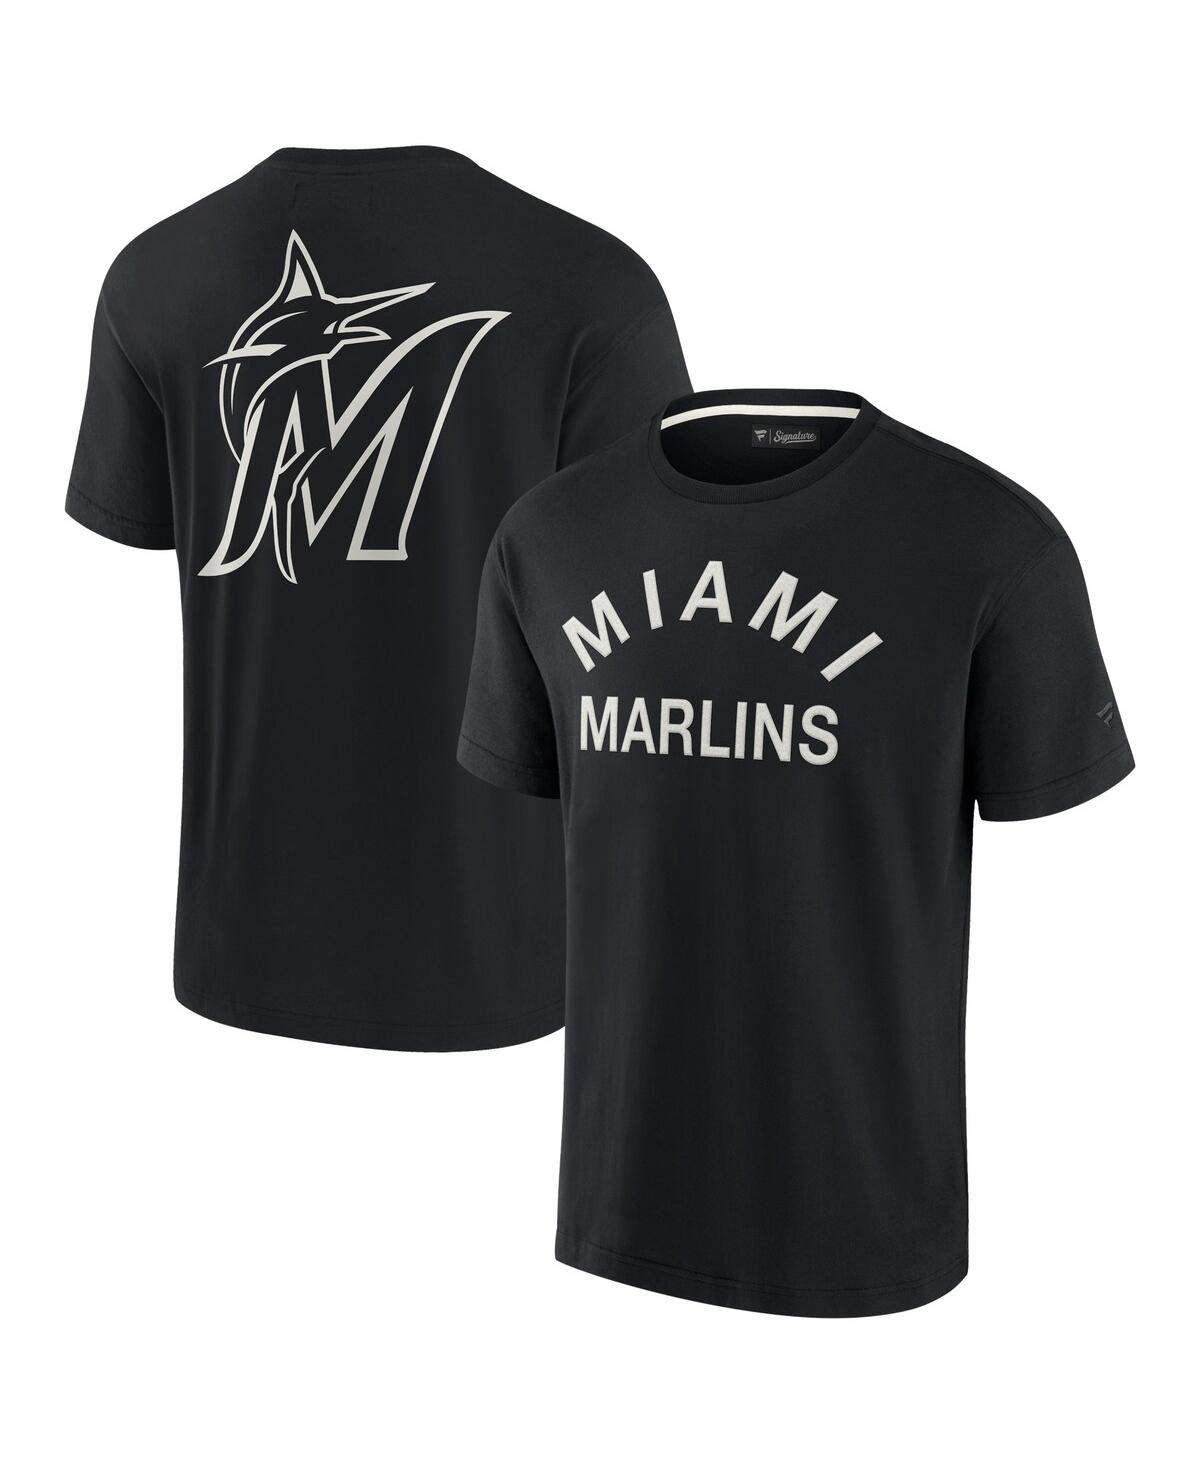 Fanatics Signature Men's And Women's  Black Miami Marlins Super Soft Short Sleeve T-shirt